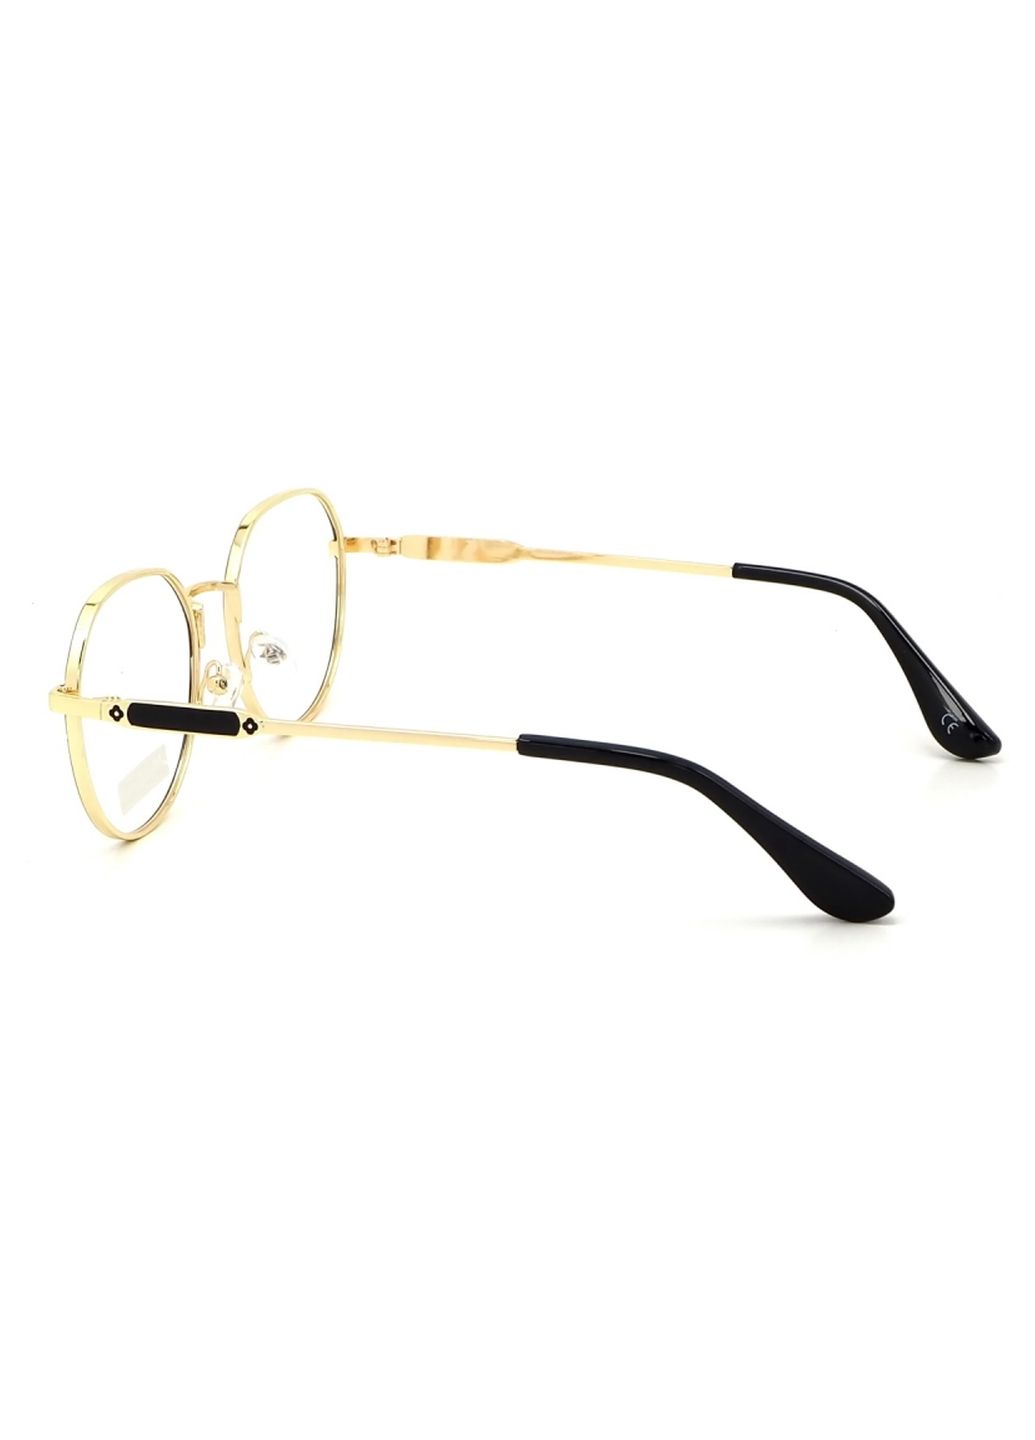 Купить Очки для работы за компьютером Cooper Glasses в золотой оправе 124007 в интернет-магазине